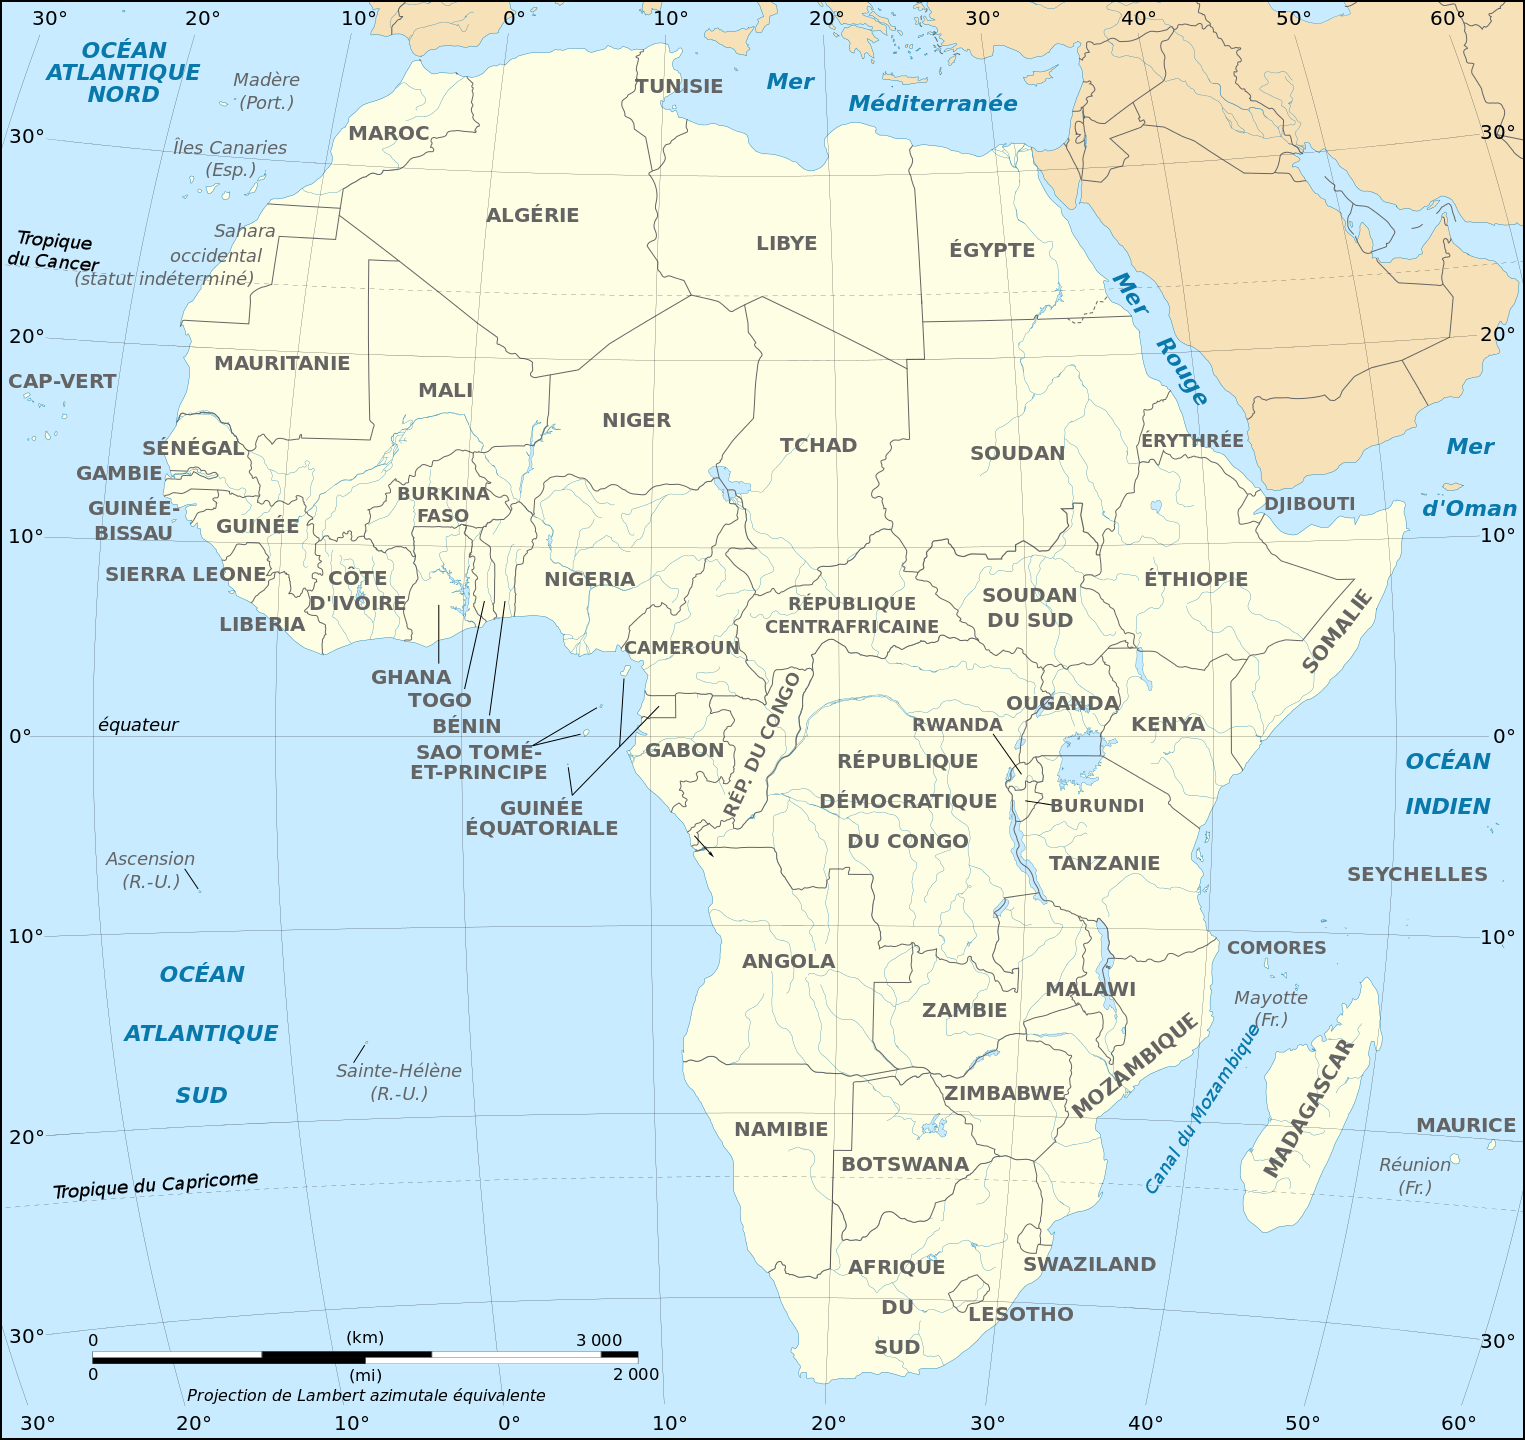 Panafricains 3 du 18 février : 2 parties (3mn/coup) jouées simultanément par des scrabbleurs de toute la Francophonie